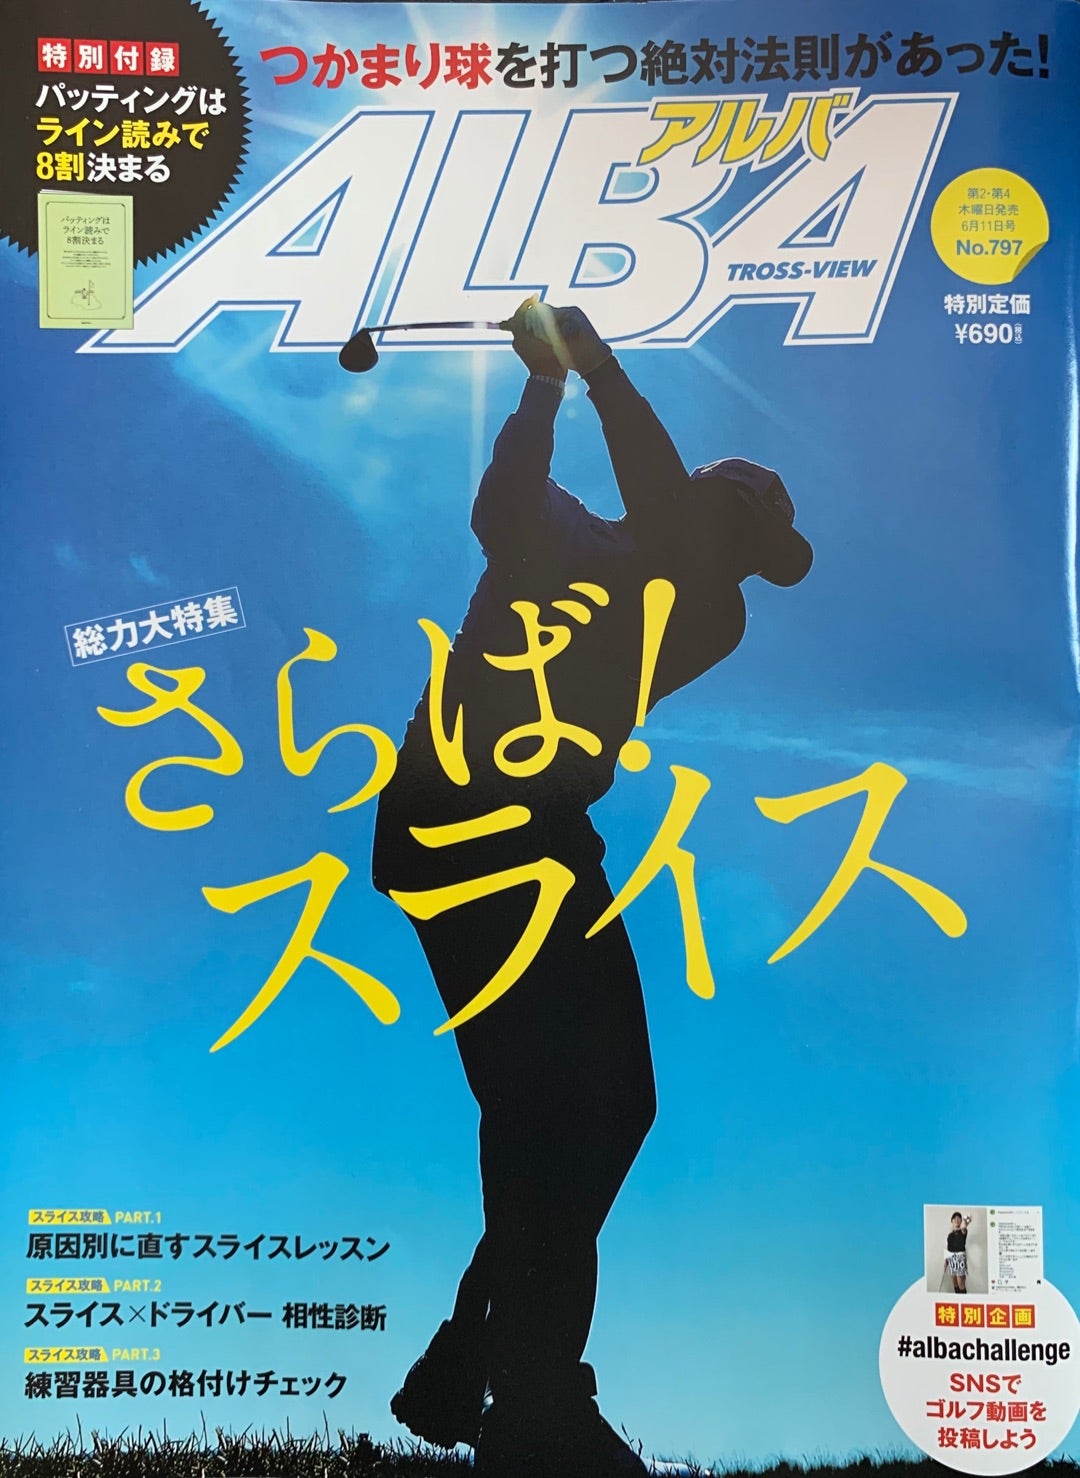 アルバトロス·ビュー ゴルフ雑誌 通販